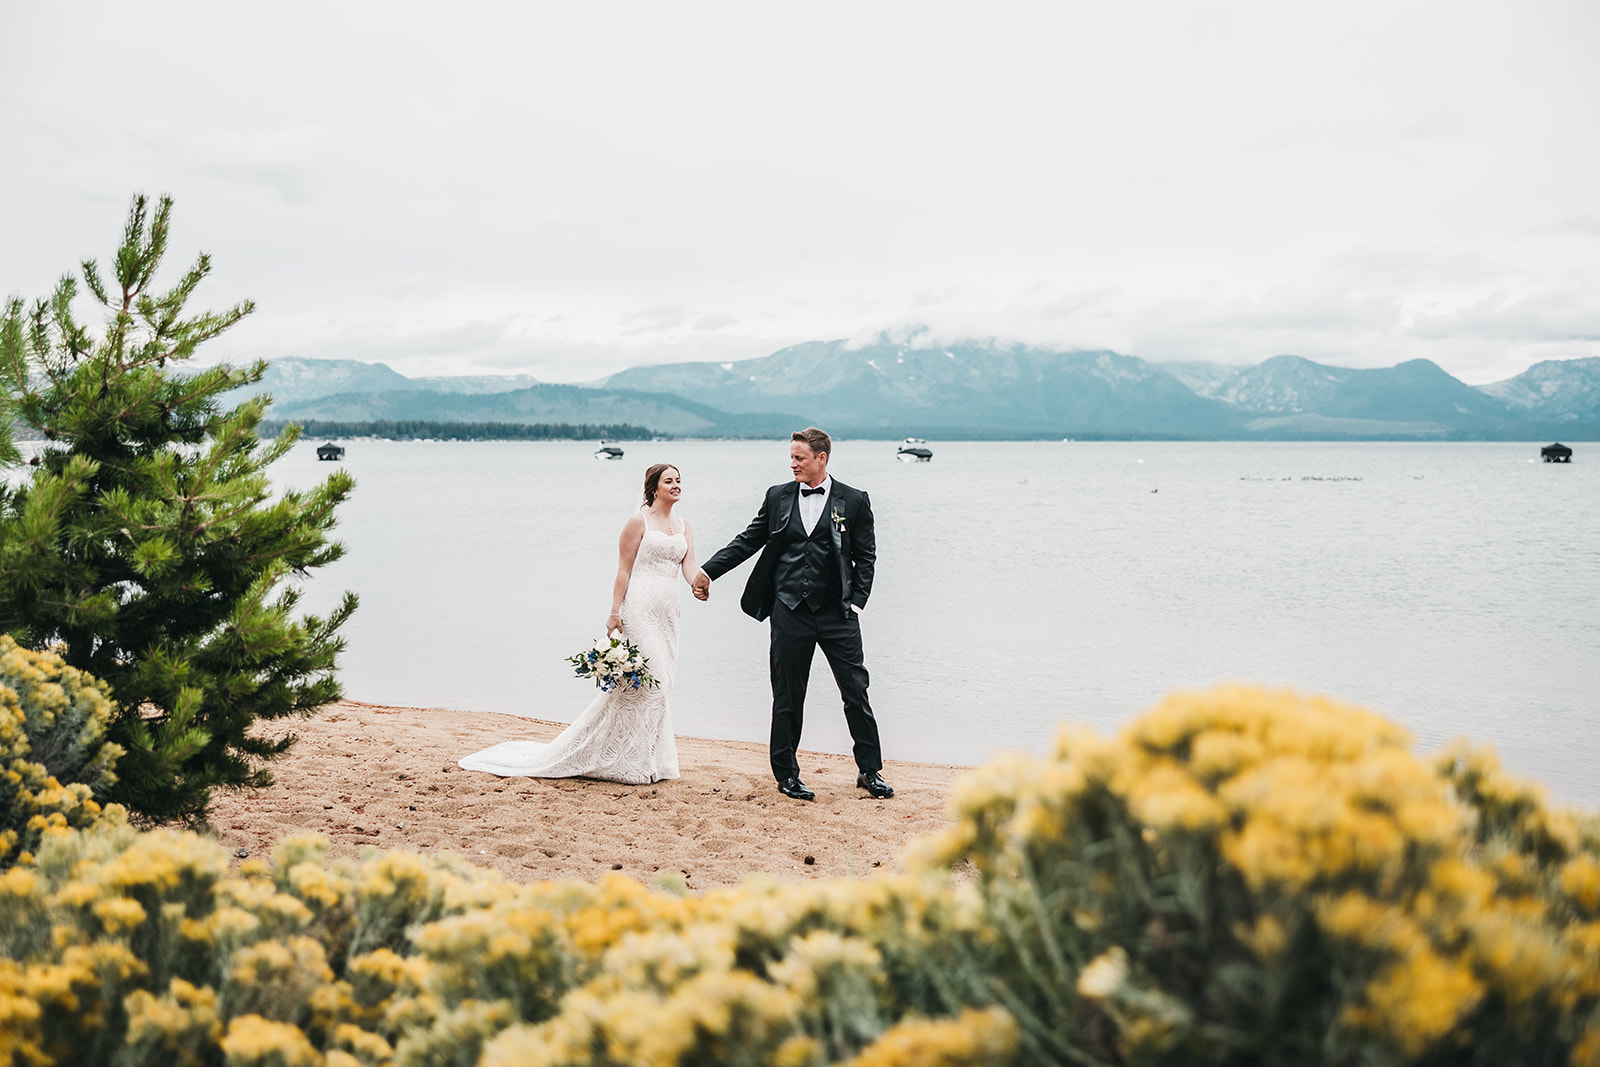 Moody Blue Summer wedding at Edgewood Tahoe Resort in Lake Tahoe, NV. 